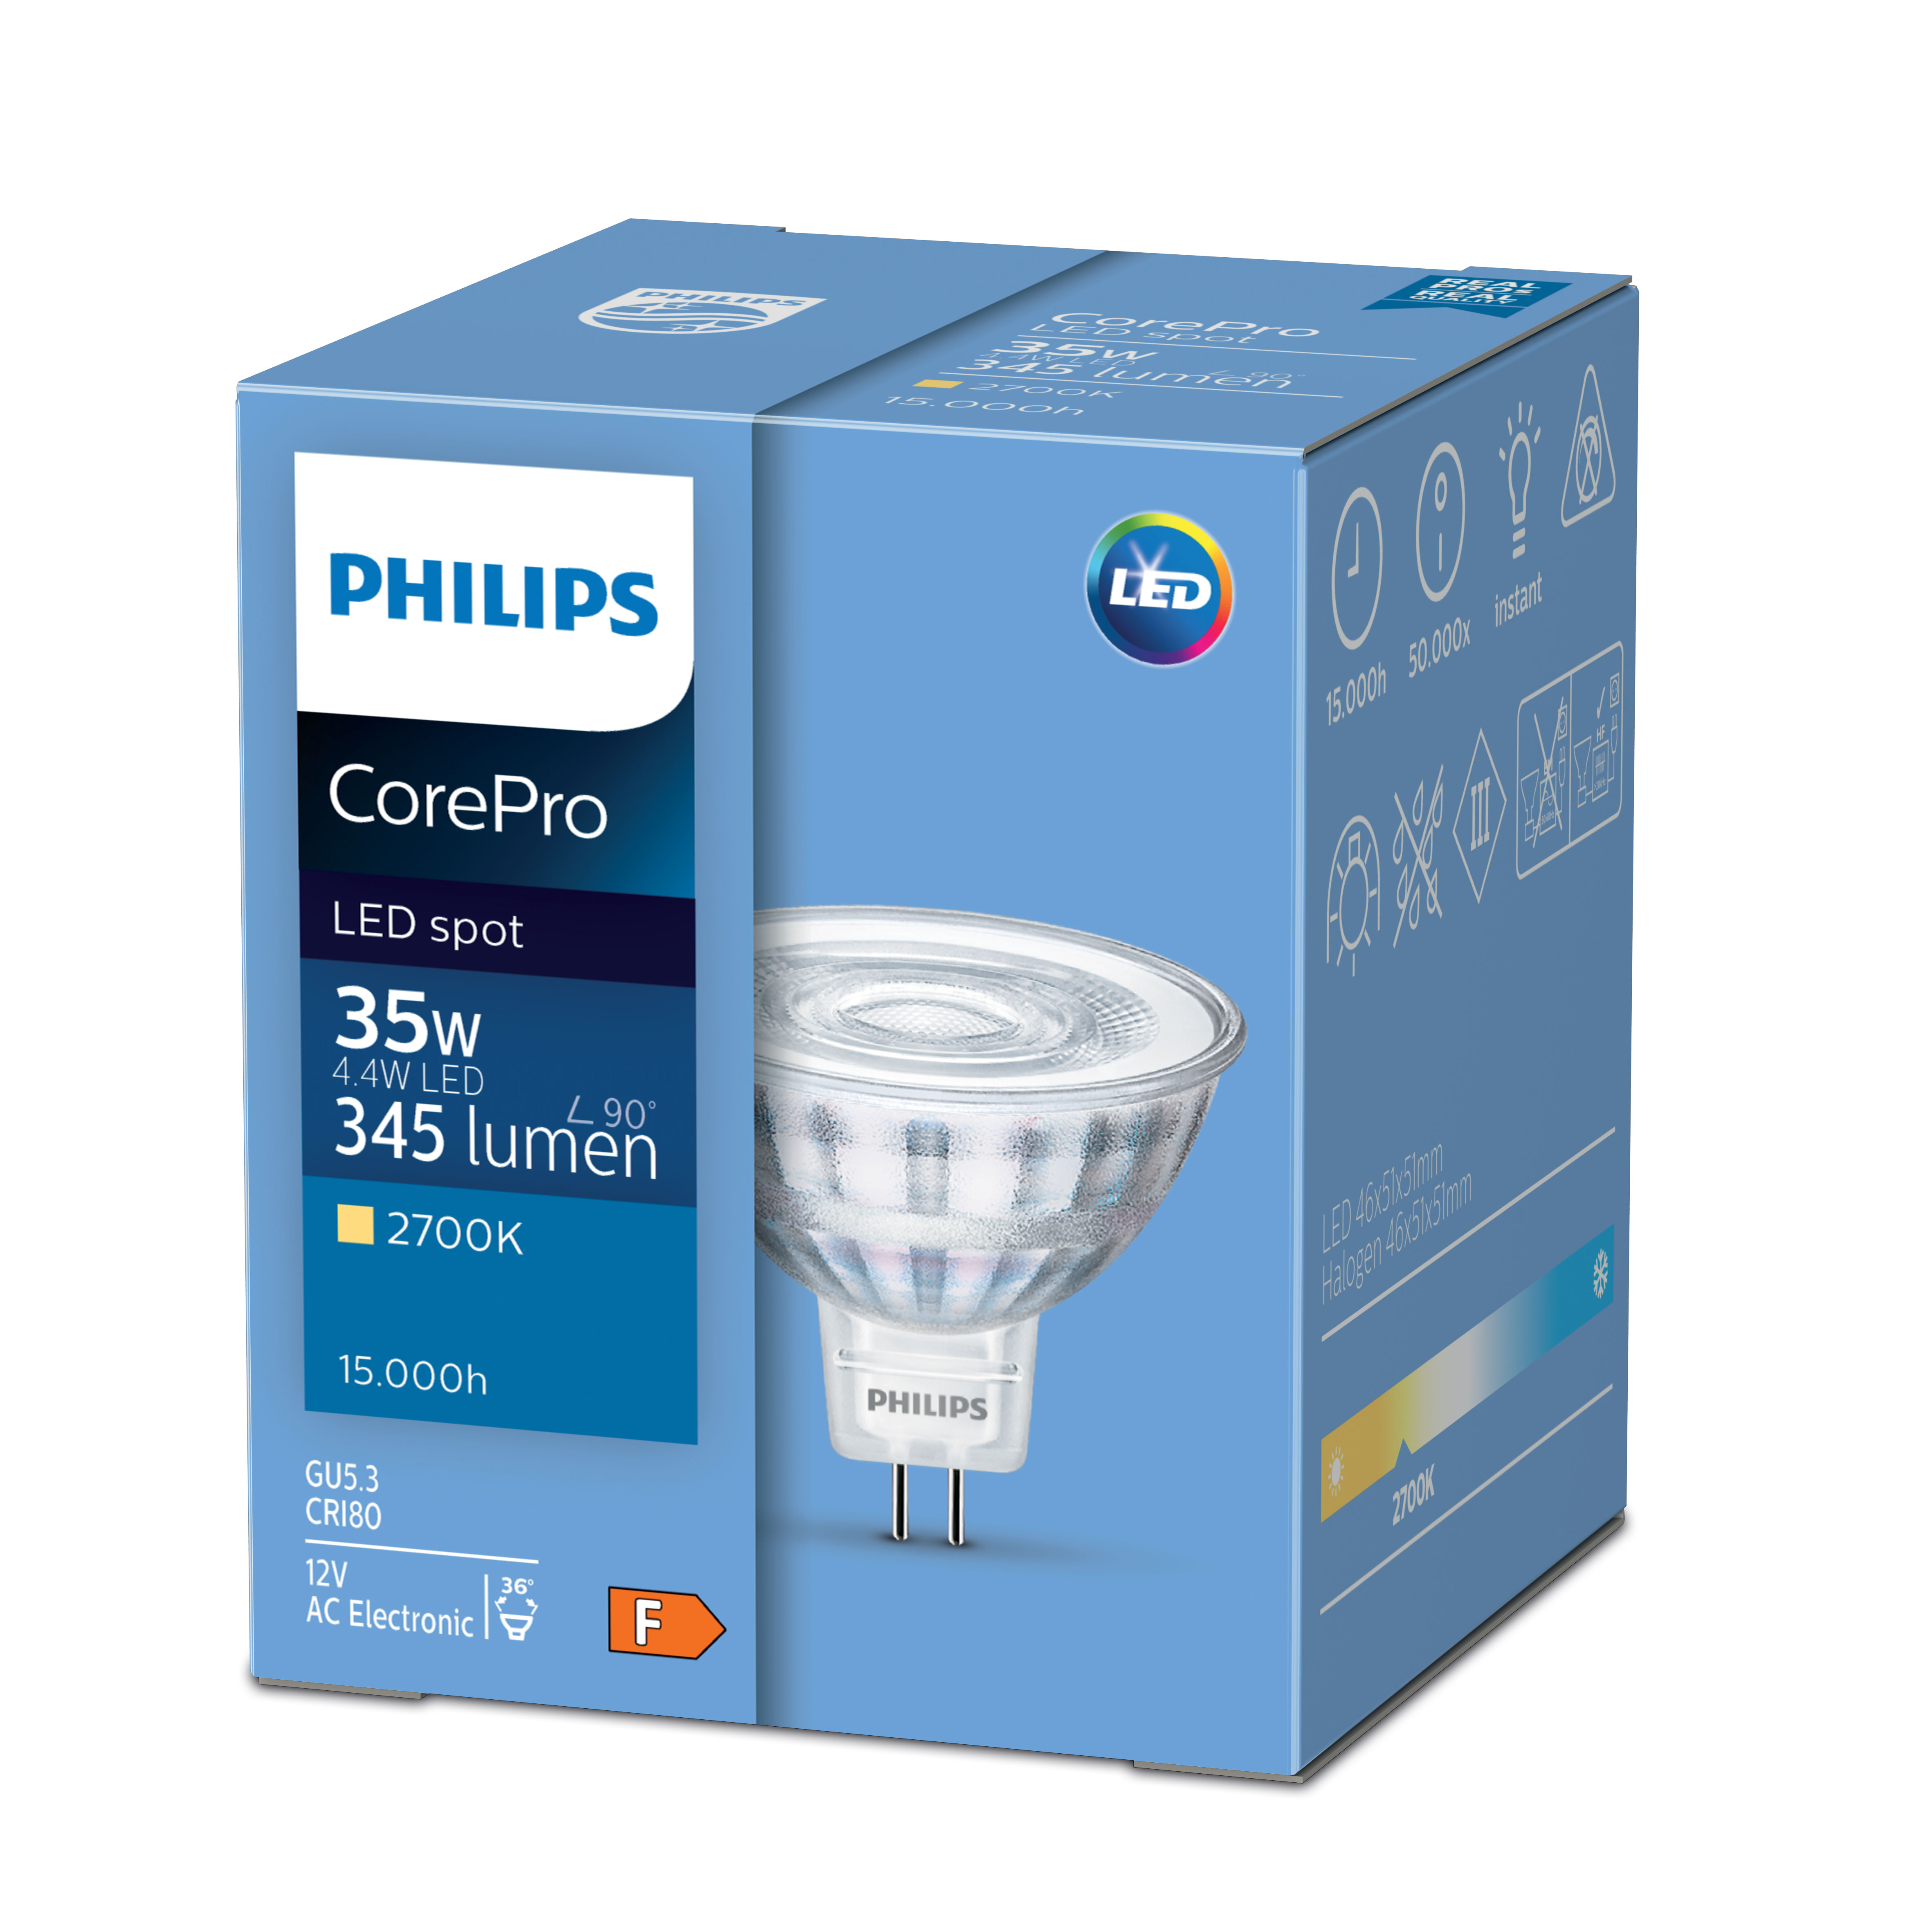 PHILIPS COREPRO LED SPOT LIGHT 35W 2700K 36°